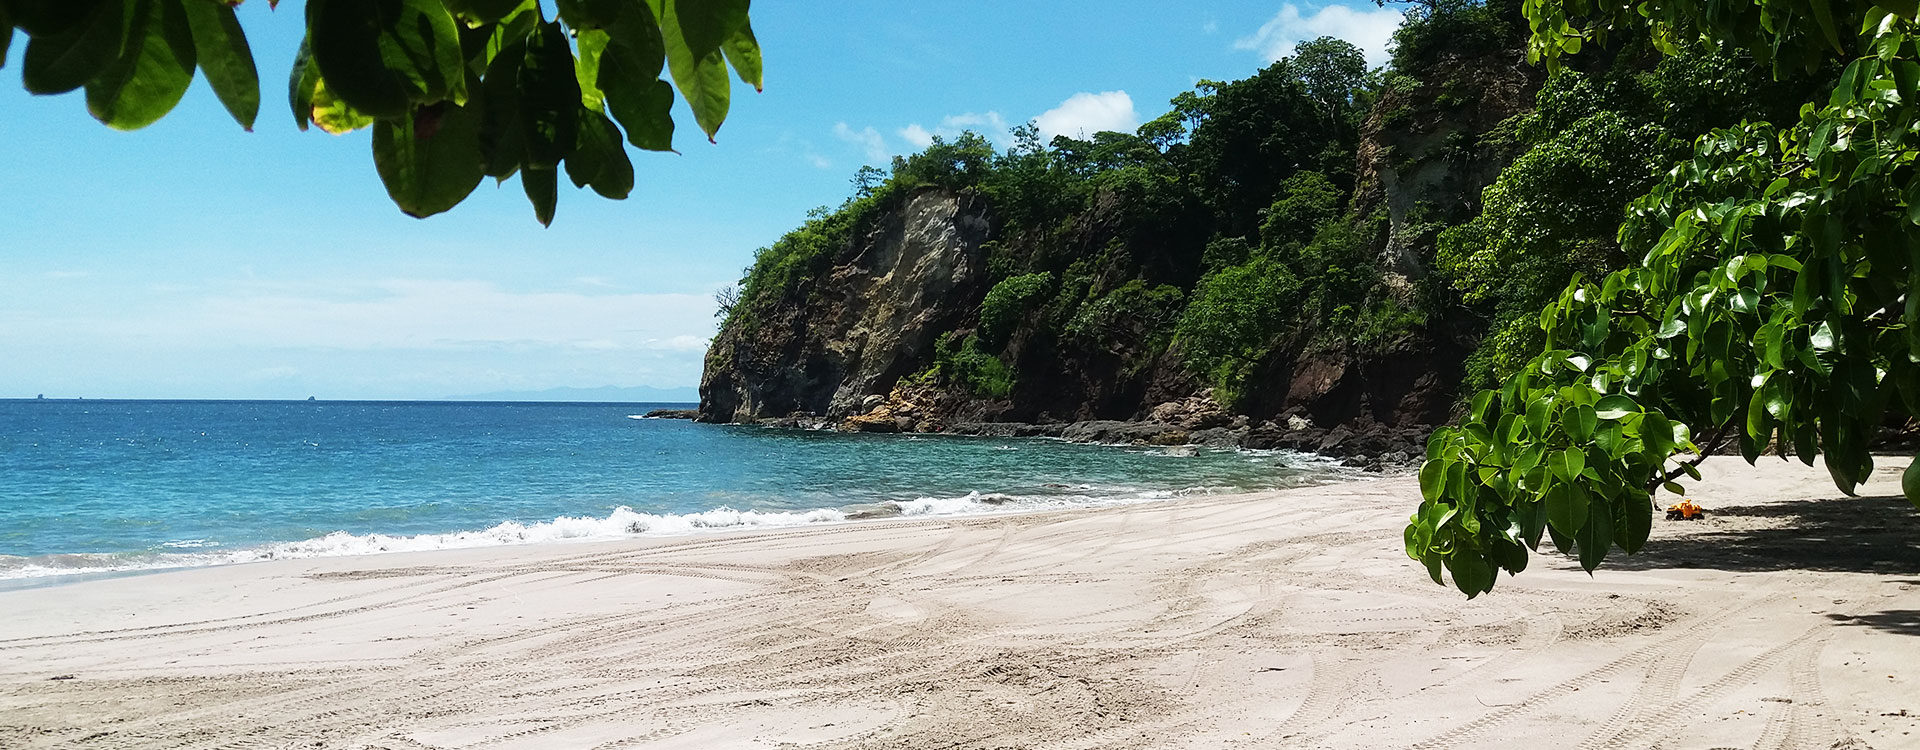 Costa Rica Beach Water